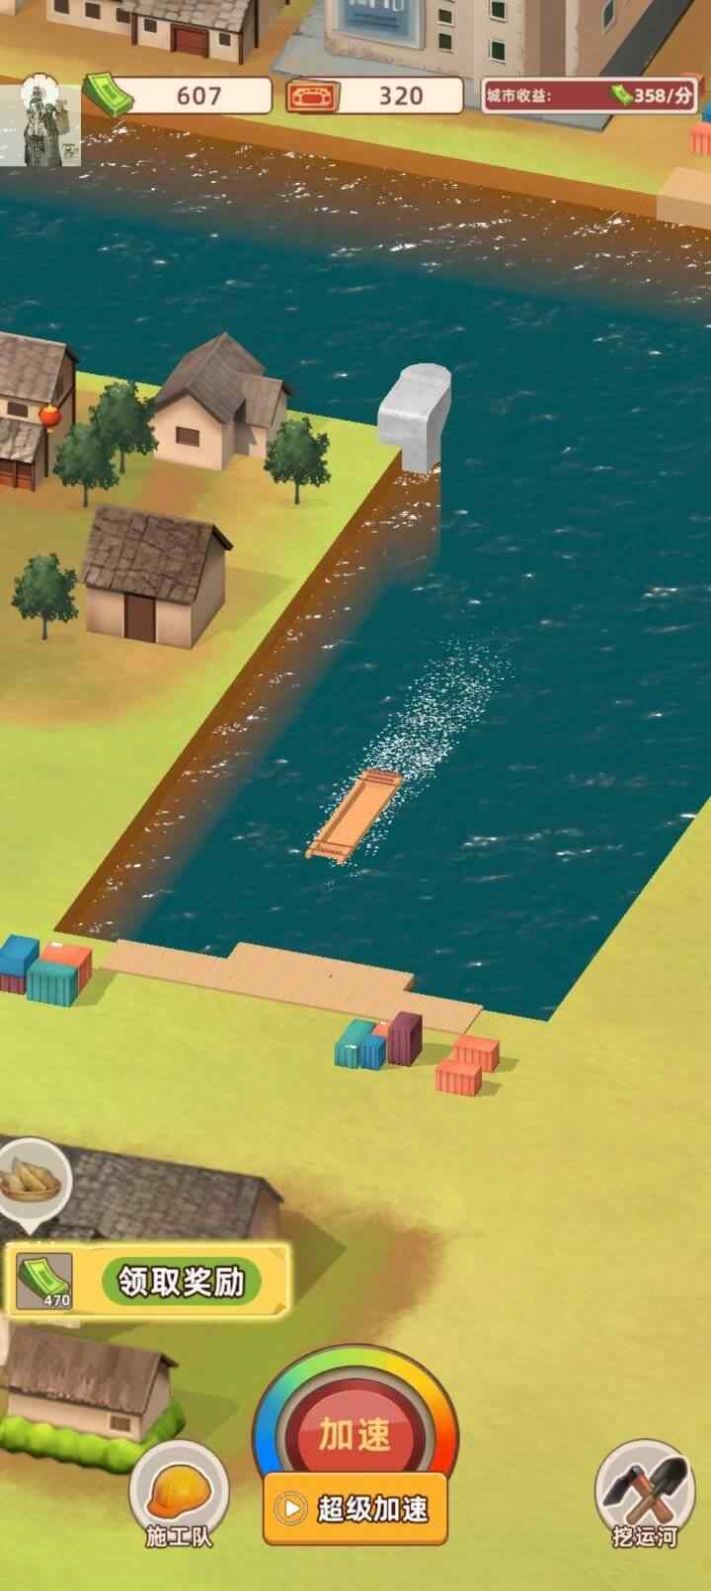 王铲铲的运河路游戏官方版图片1